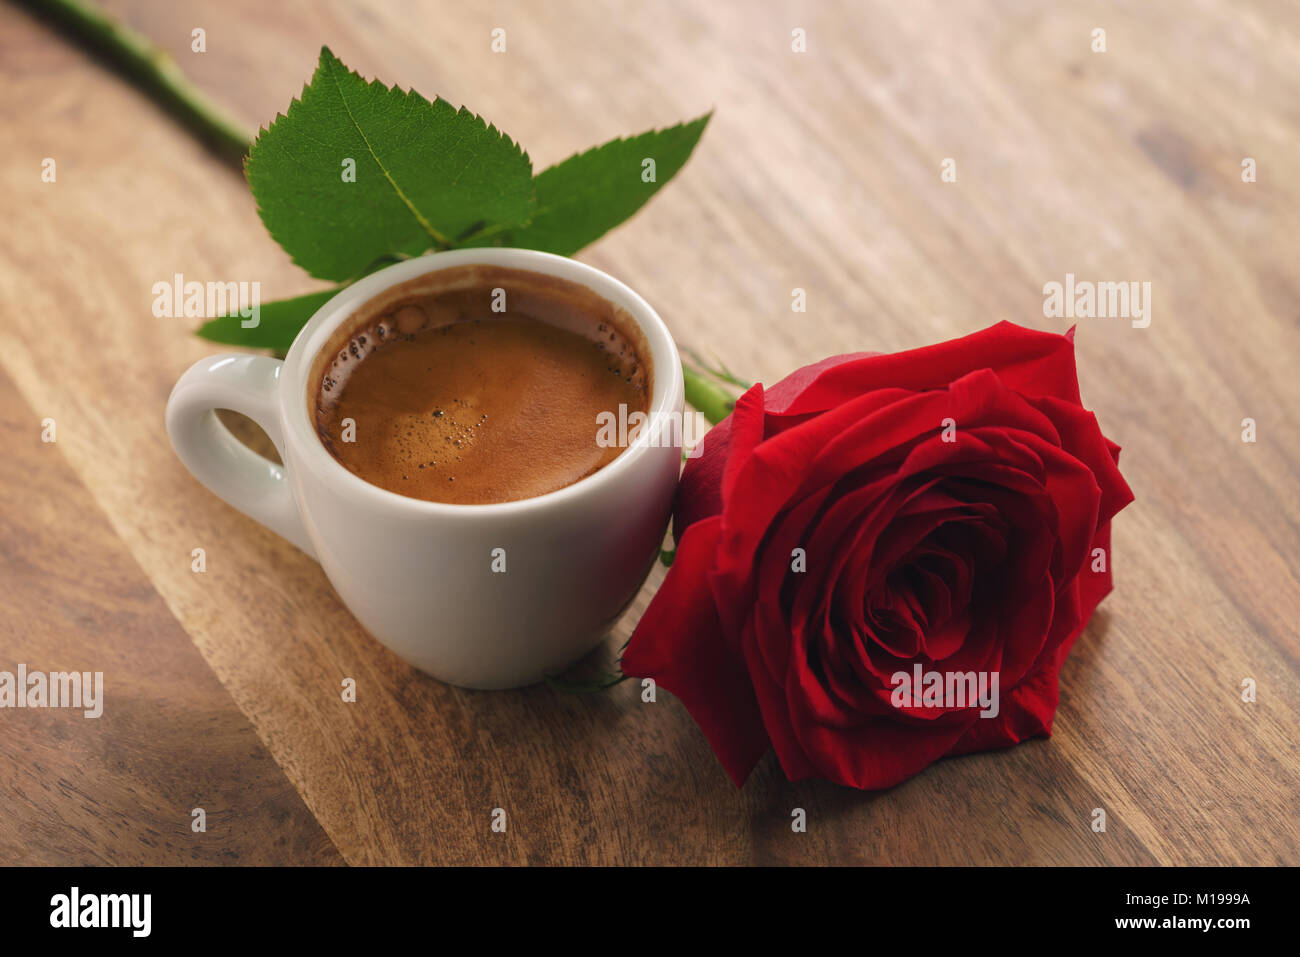 Frischen Espresso mit roter Rose Blume auf Holz Tisch Stockfoto